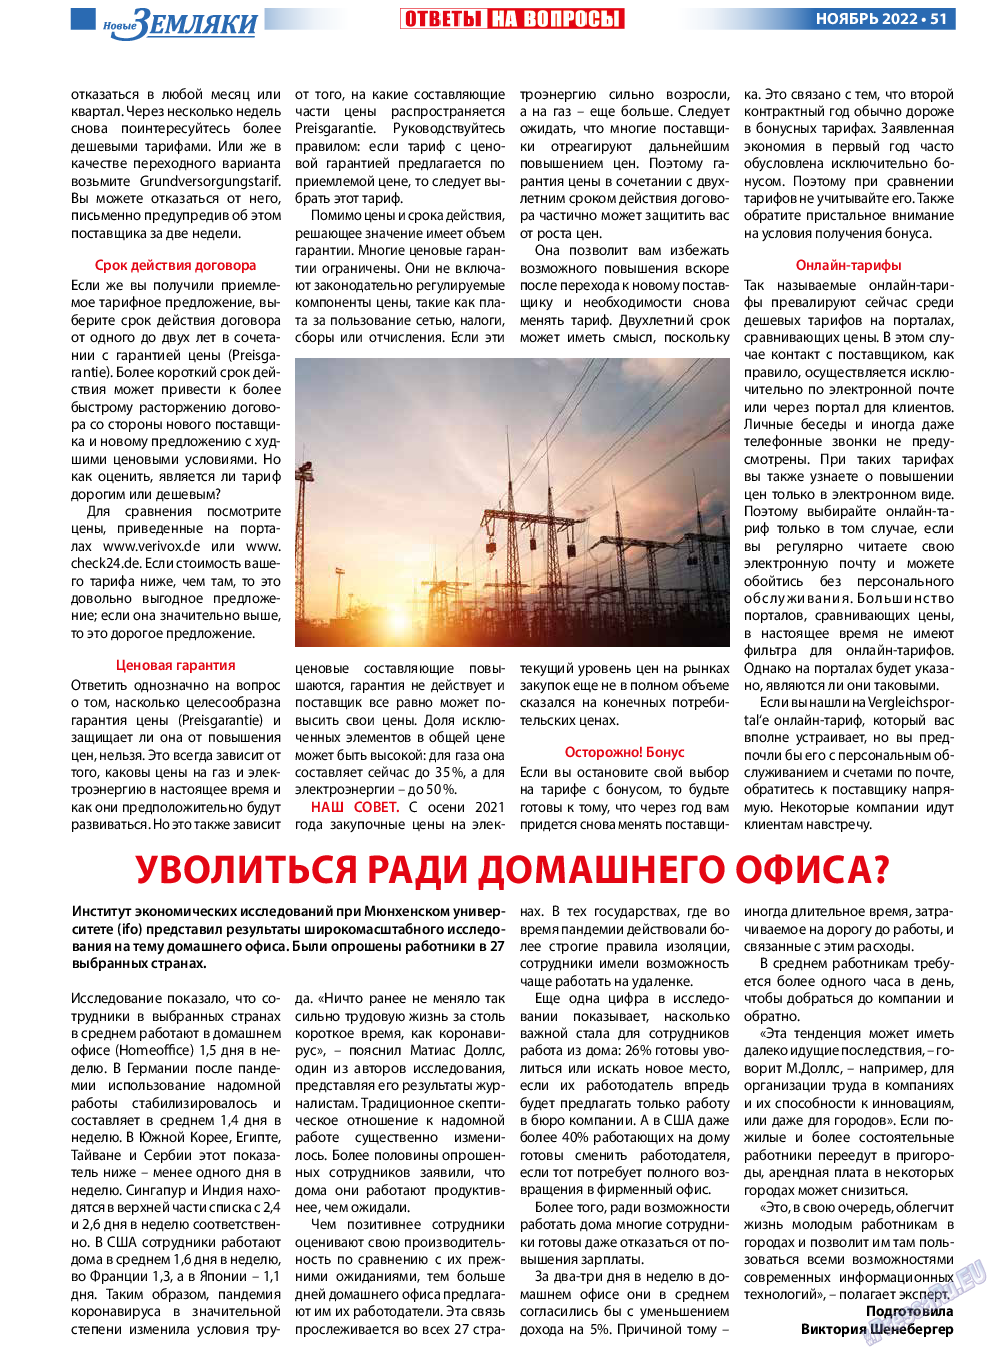 Новые Земляки, газета. 2022 №11 стр.51